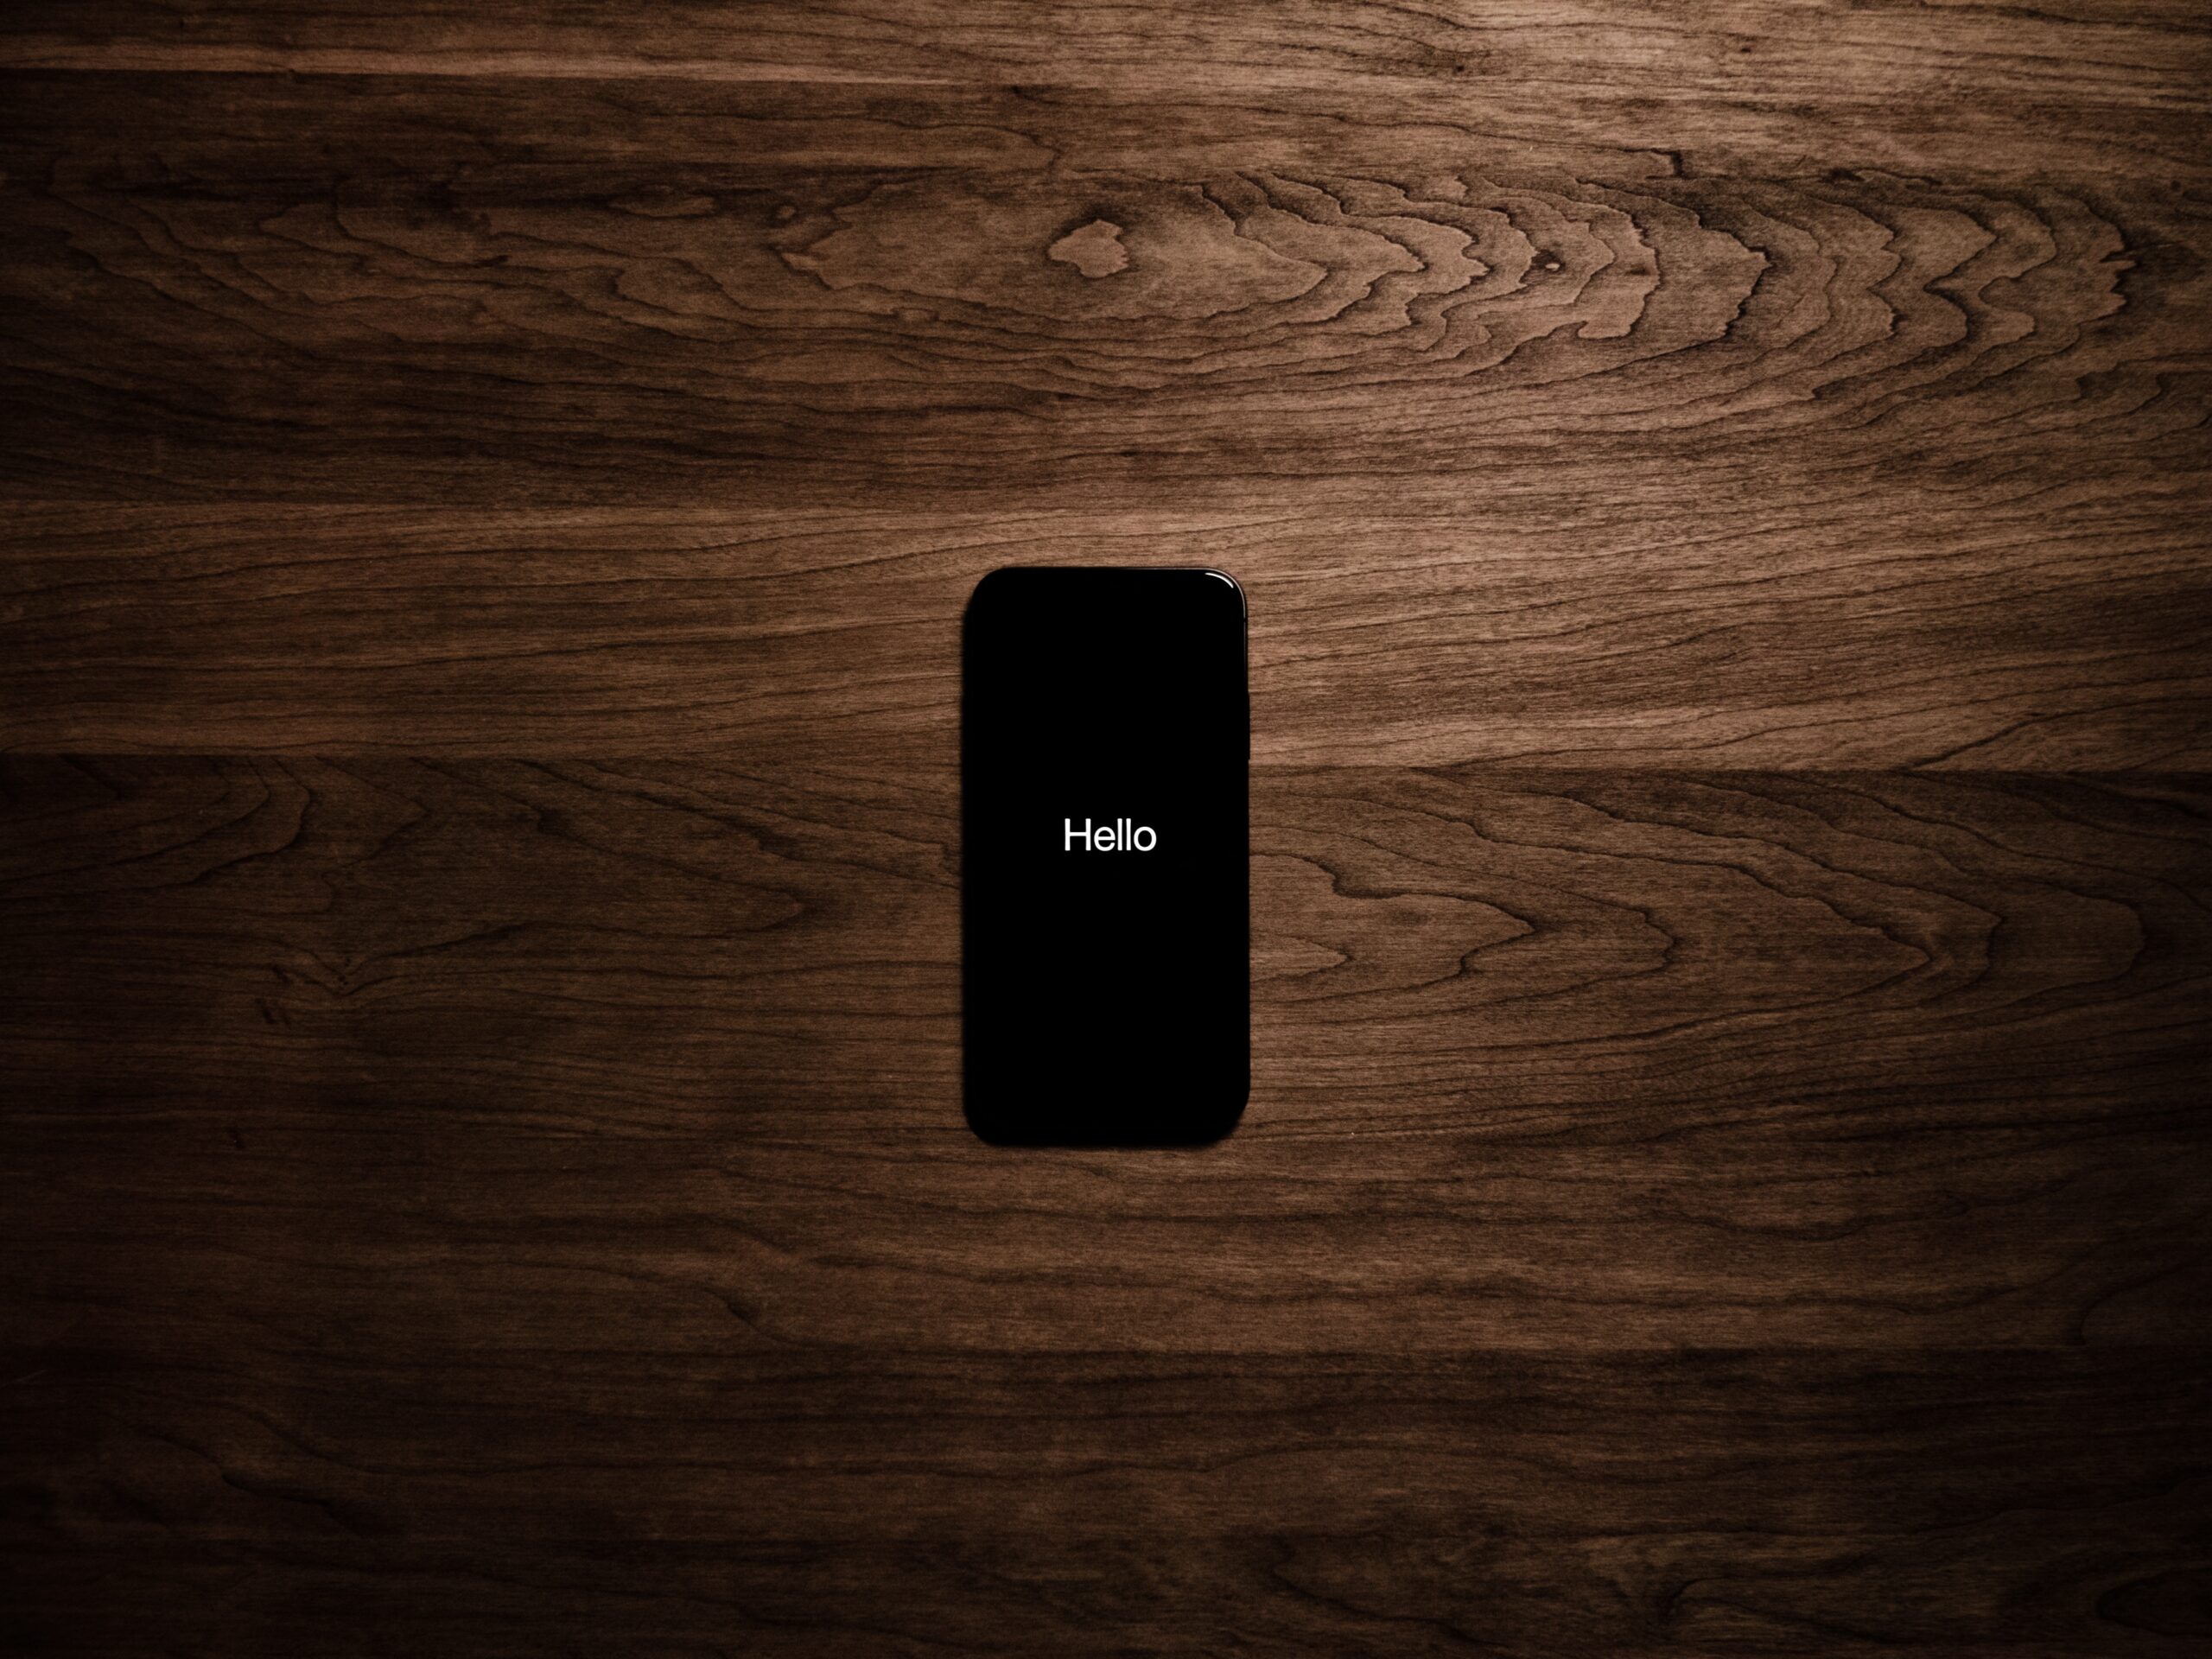 iPhone 4S mit Sprachsteuerung Siri